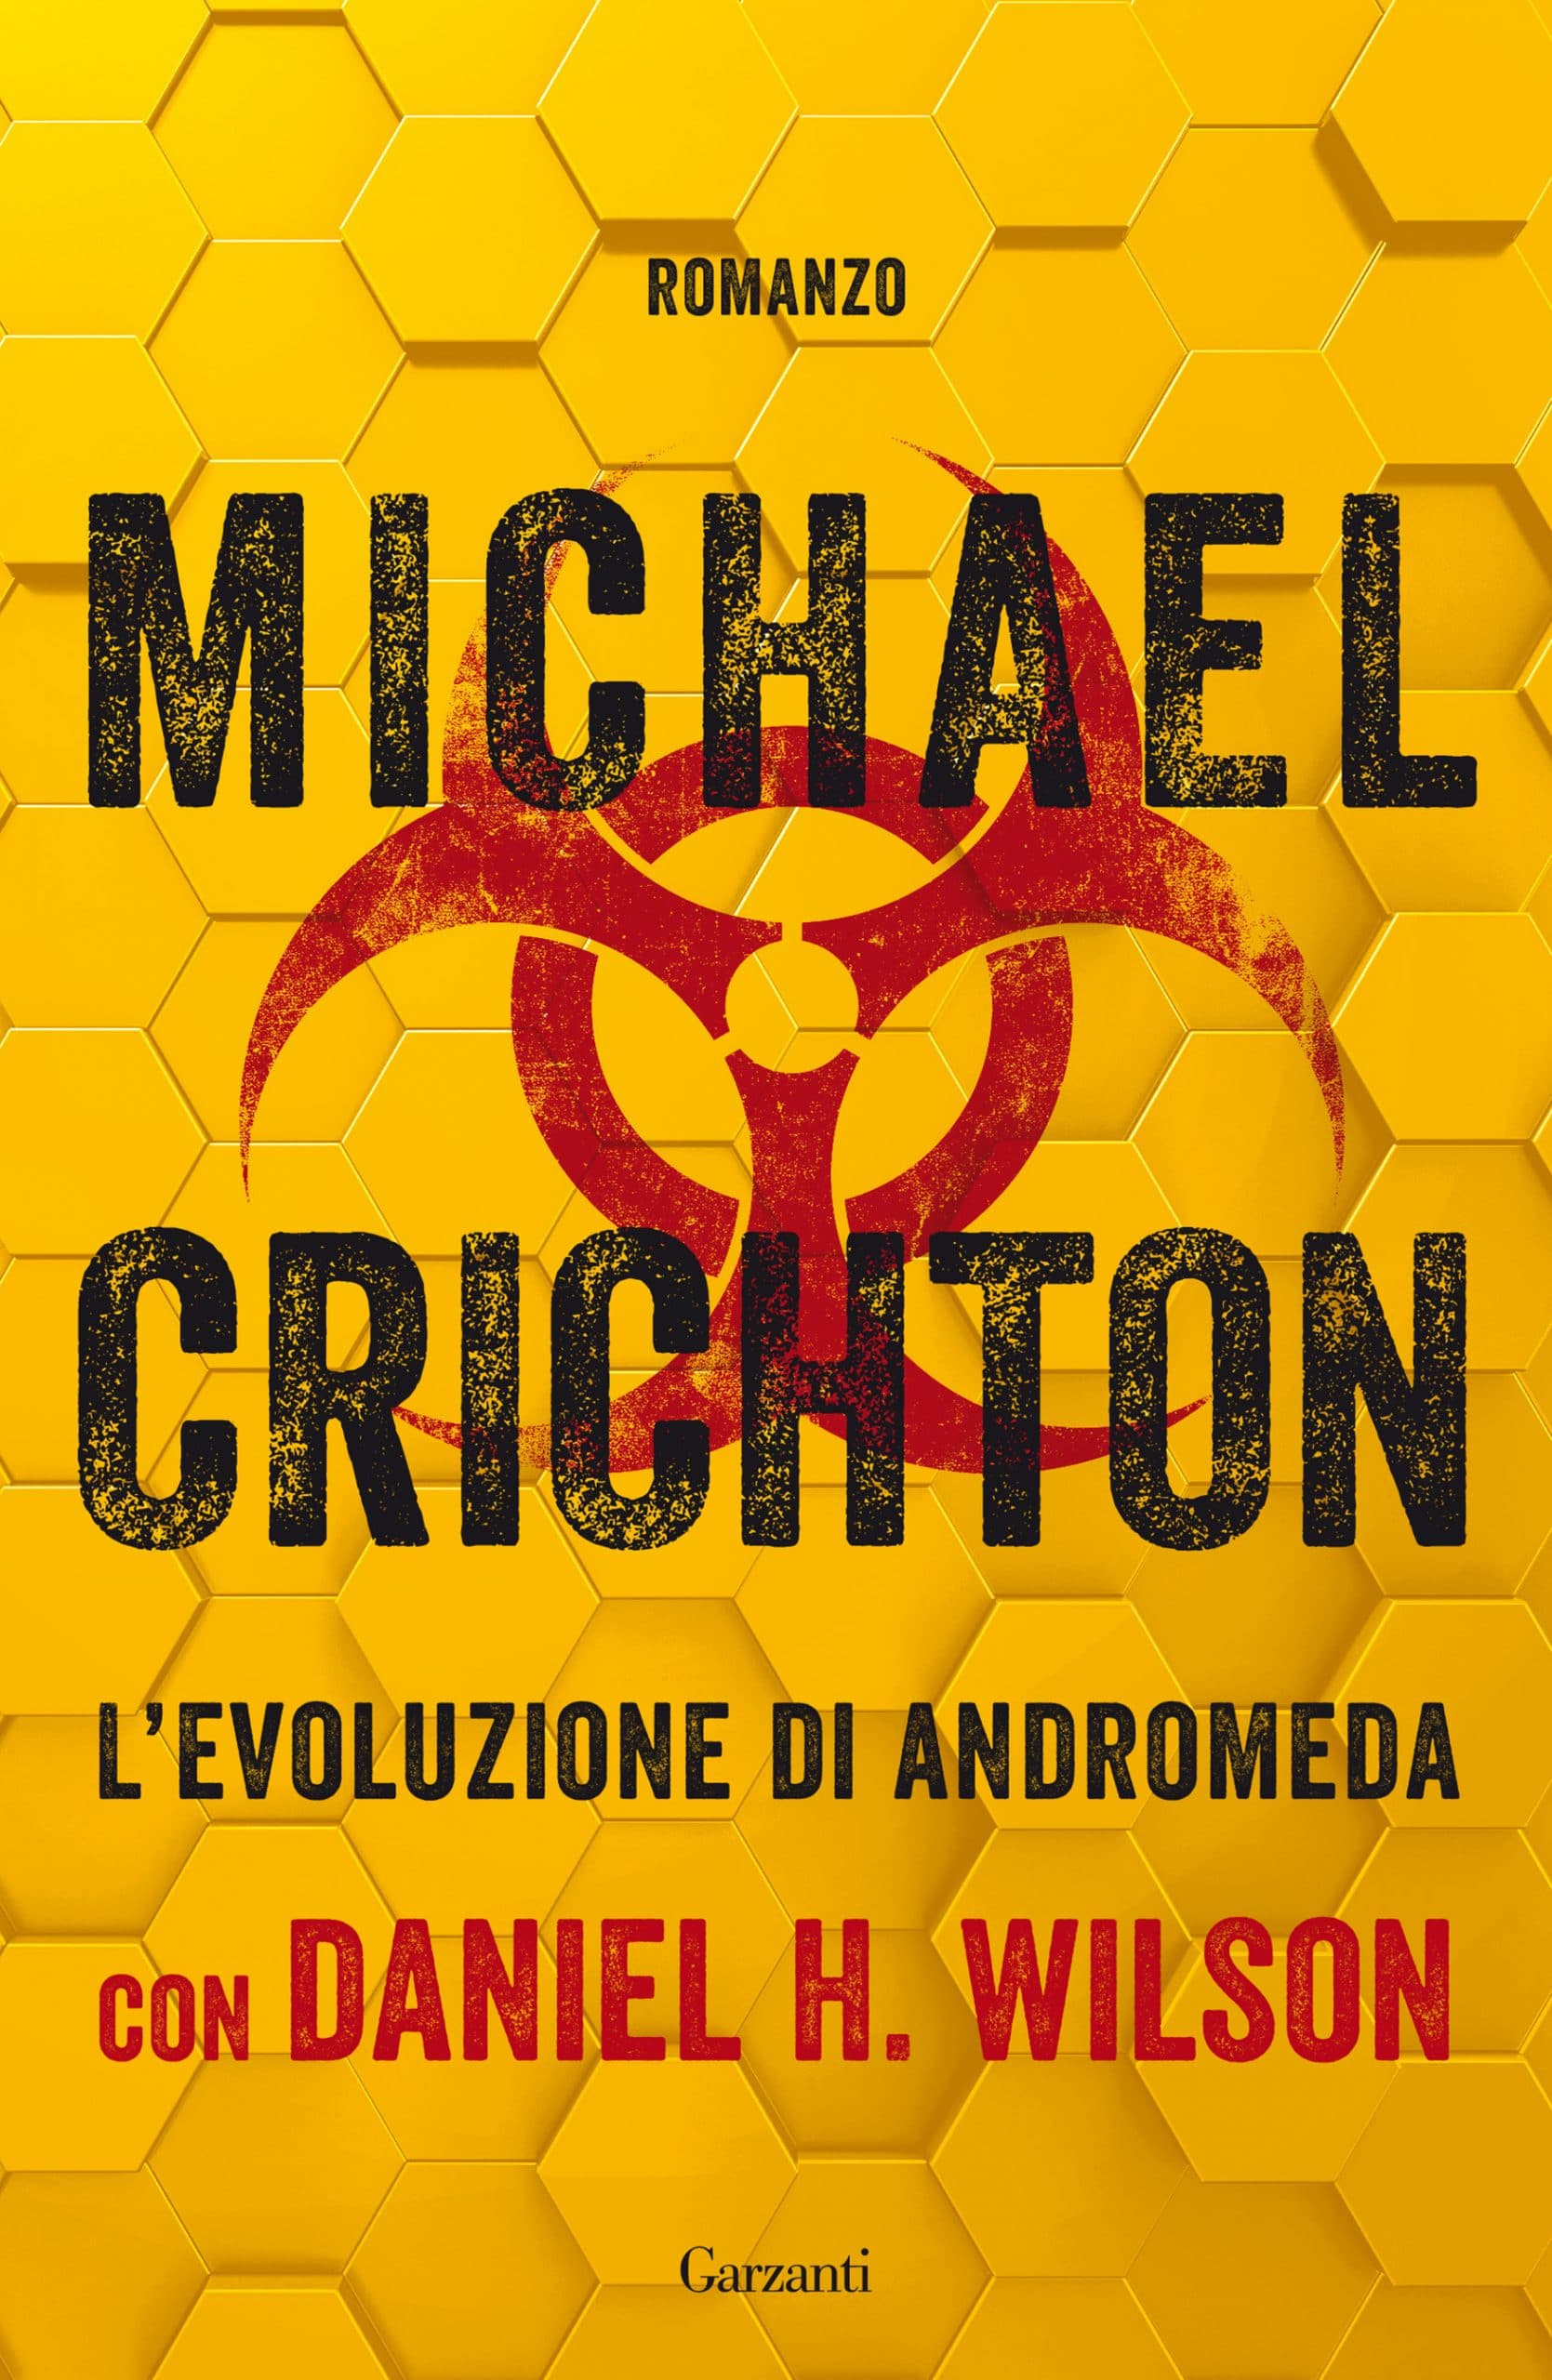 Michael Crichton L'evoluzione di Andromeda